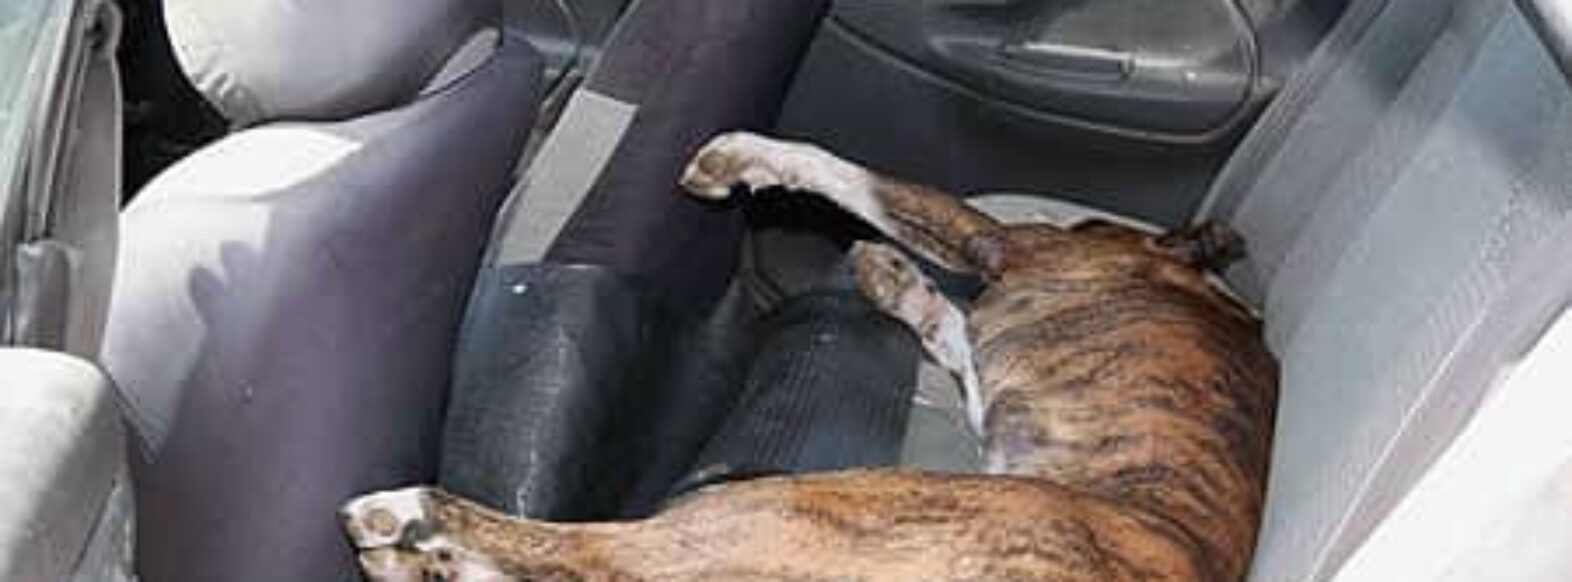 כלב נותר סגור ברכב במשך 45 דקות וניצל ממוות ע”י עובר אורח